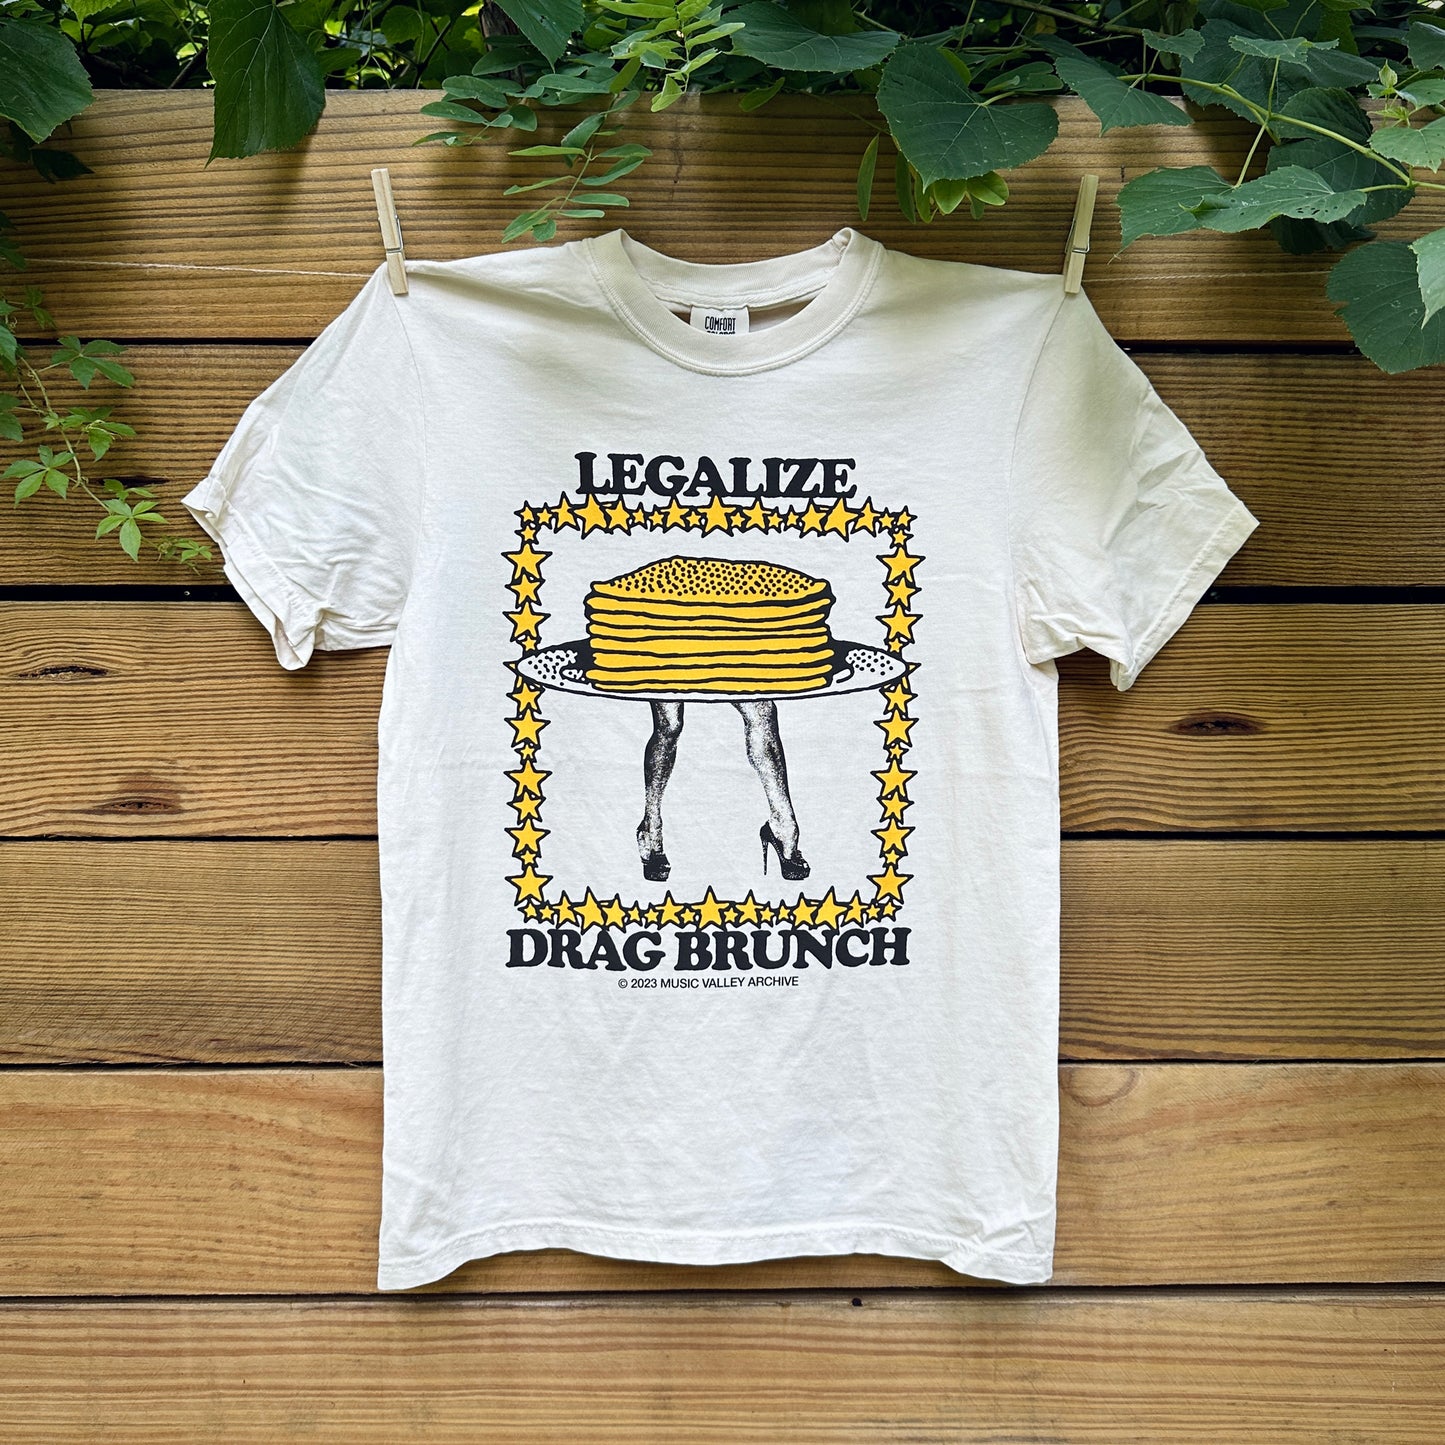 Legalize Drag Brunch tee